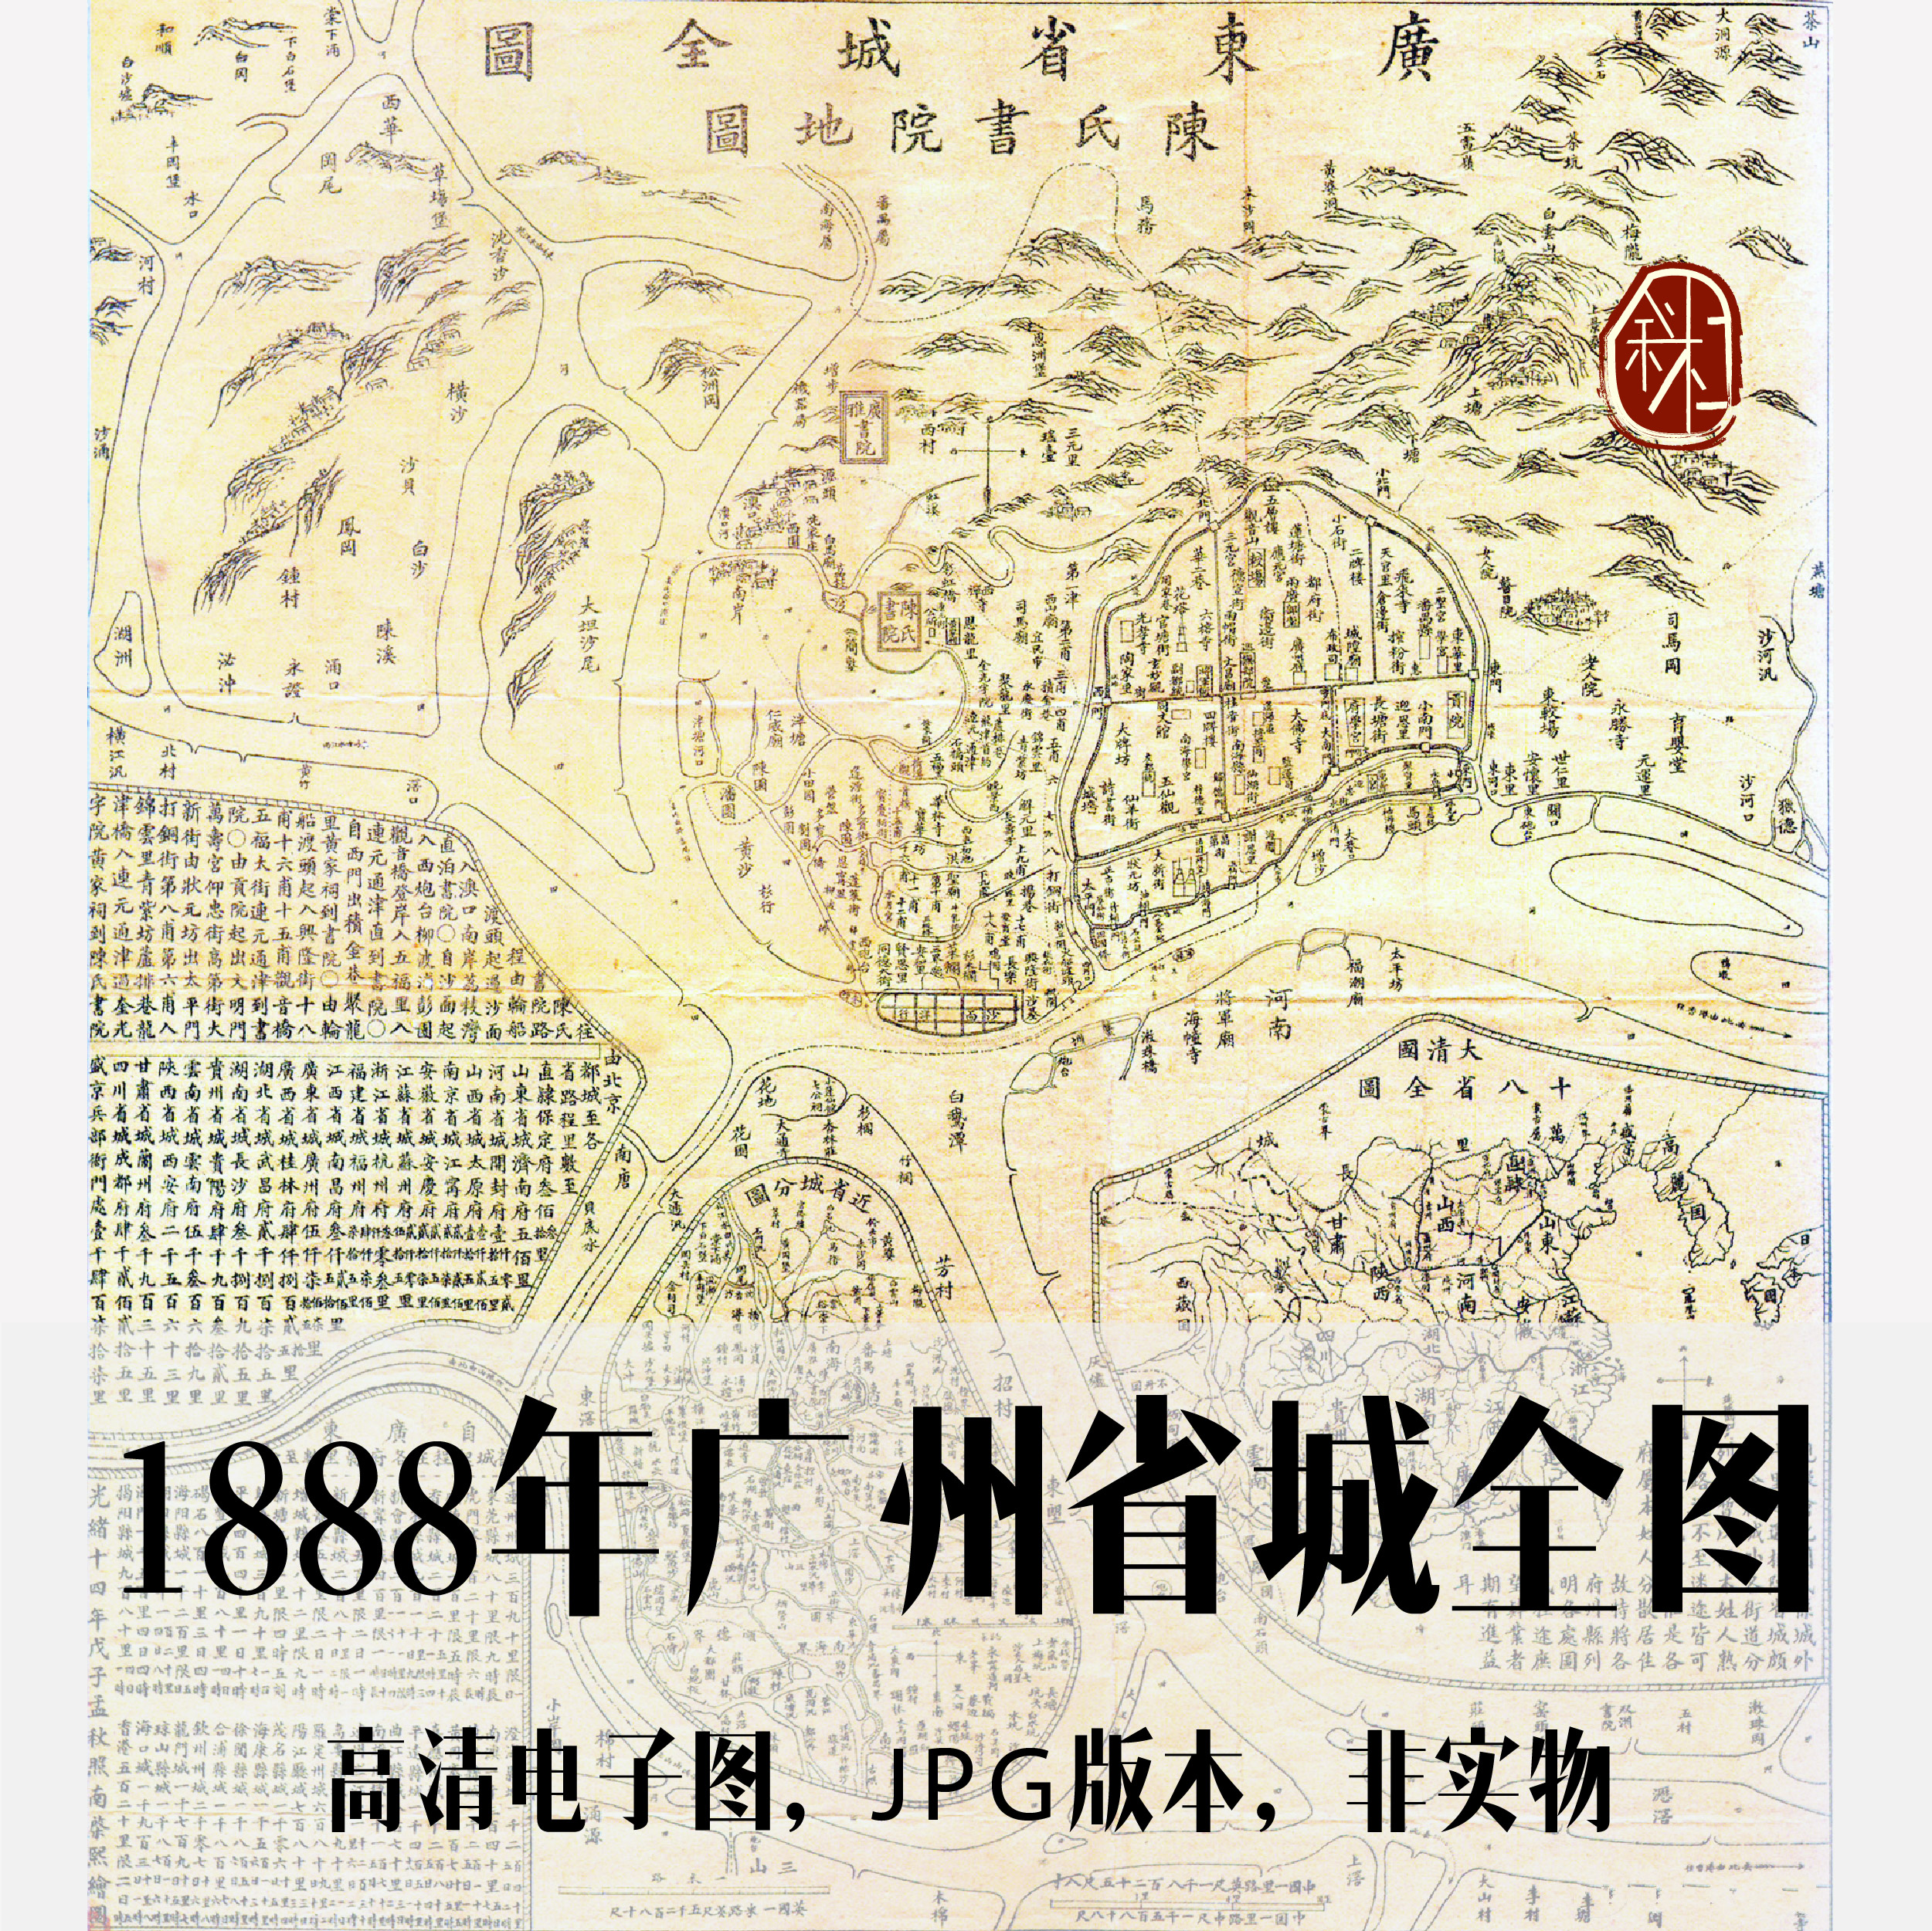 1888年广州省城全图电子老地图手绘历史地理资料素材